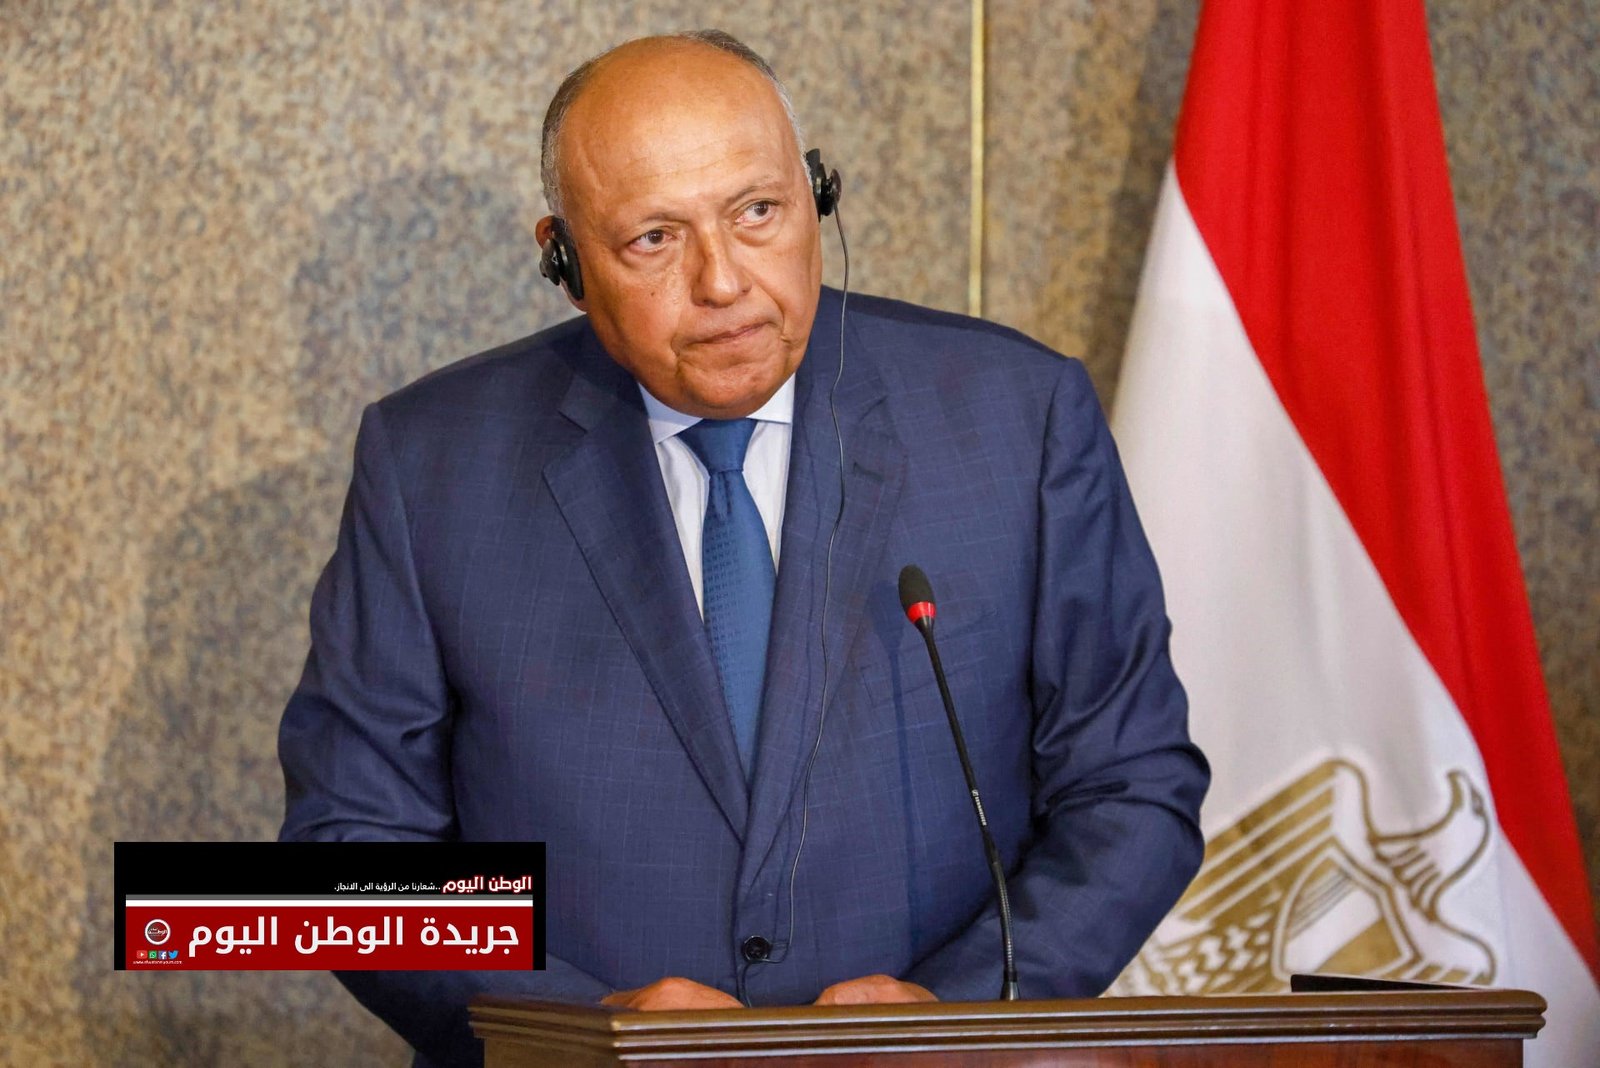 وزير الخارجية المصري يبحث هاتفيا مع نظيره الإيراني الوضع الأمني والإنساني في قطاع غزة 